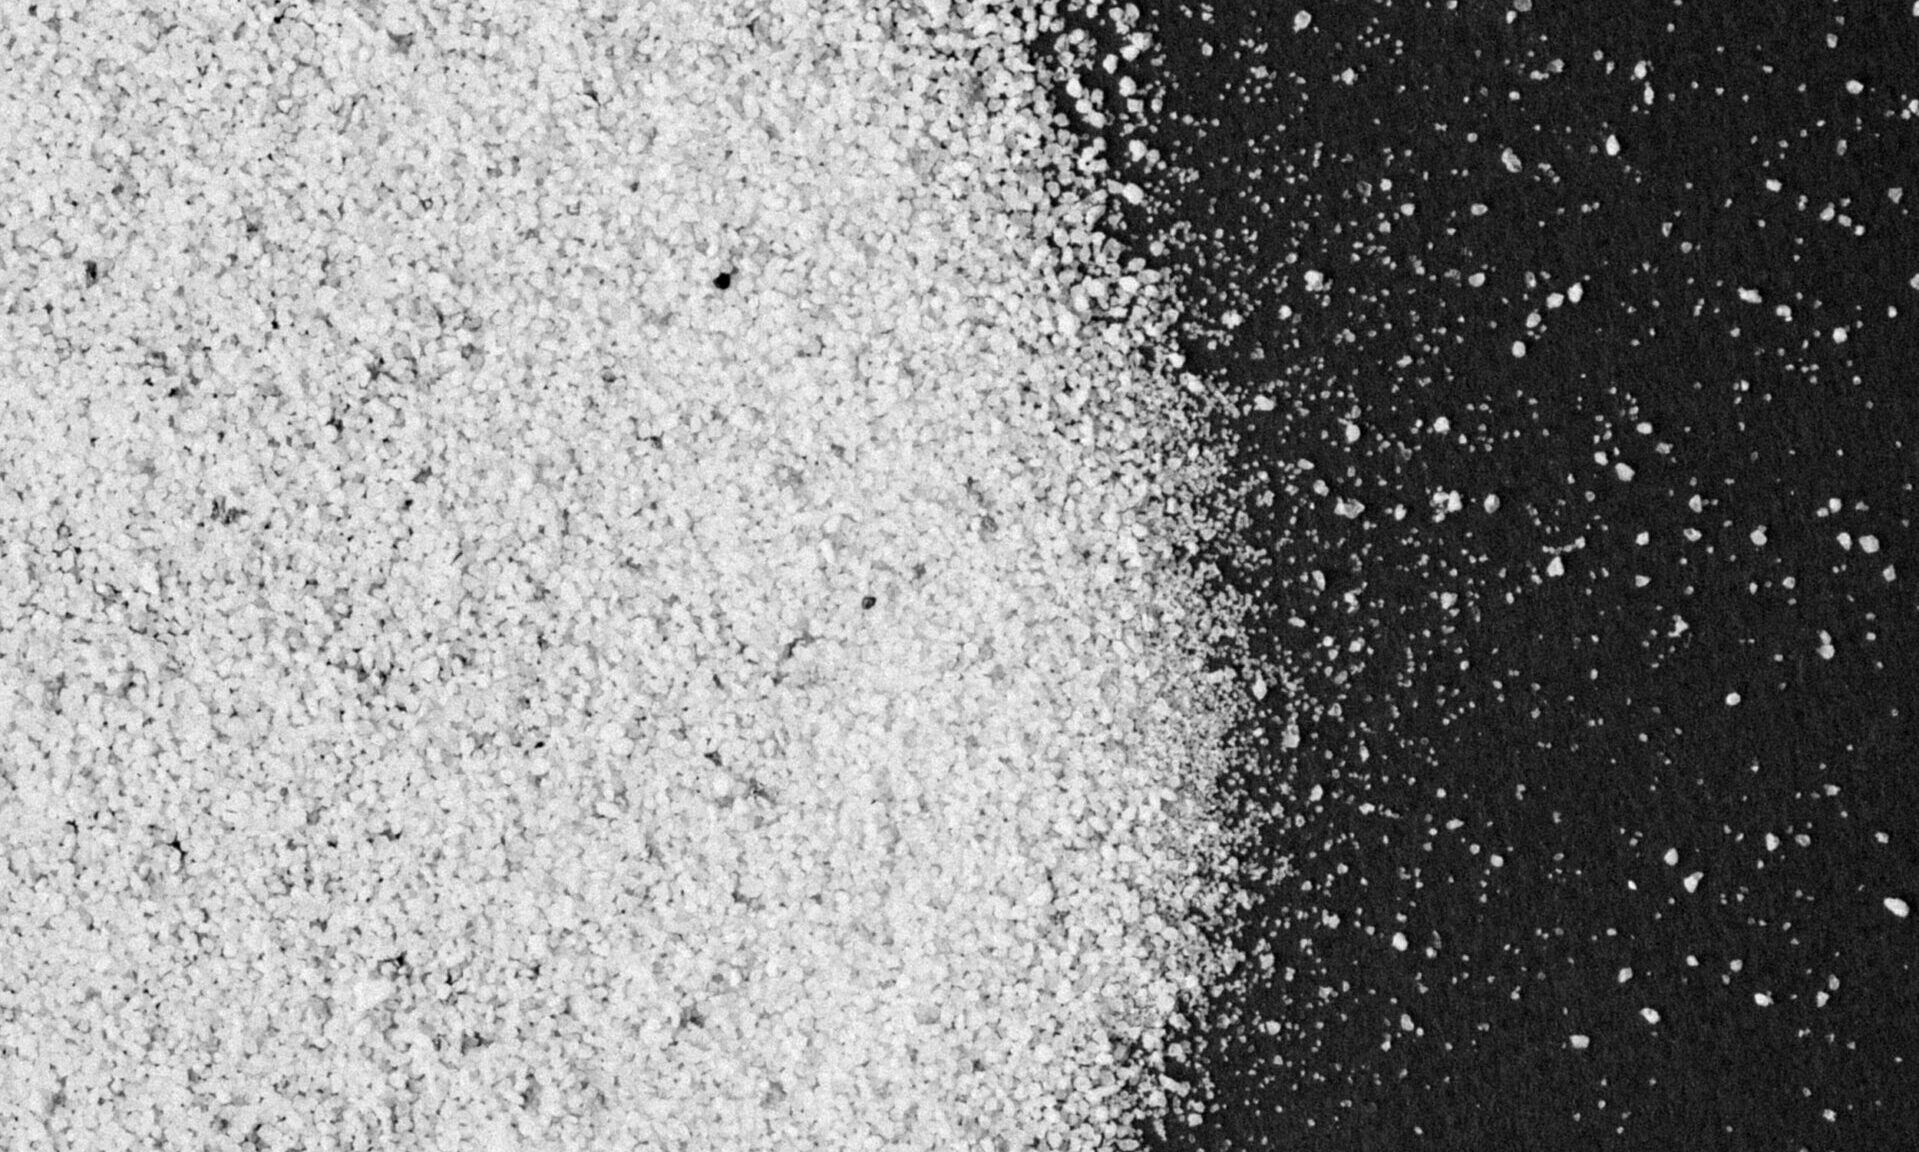 Partículas de areia purificada podem combater obesidade, apontam cientistas